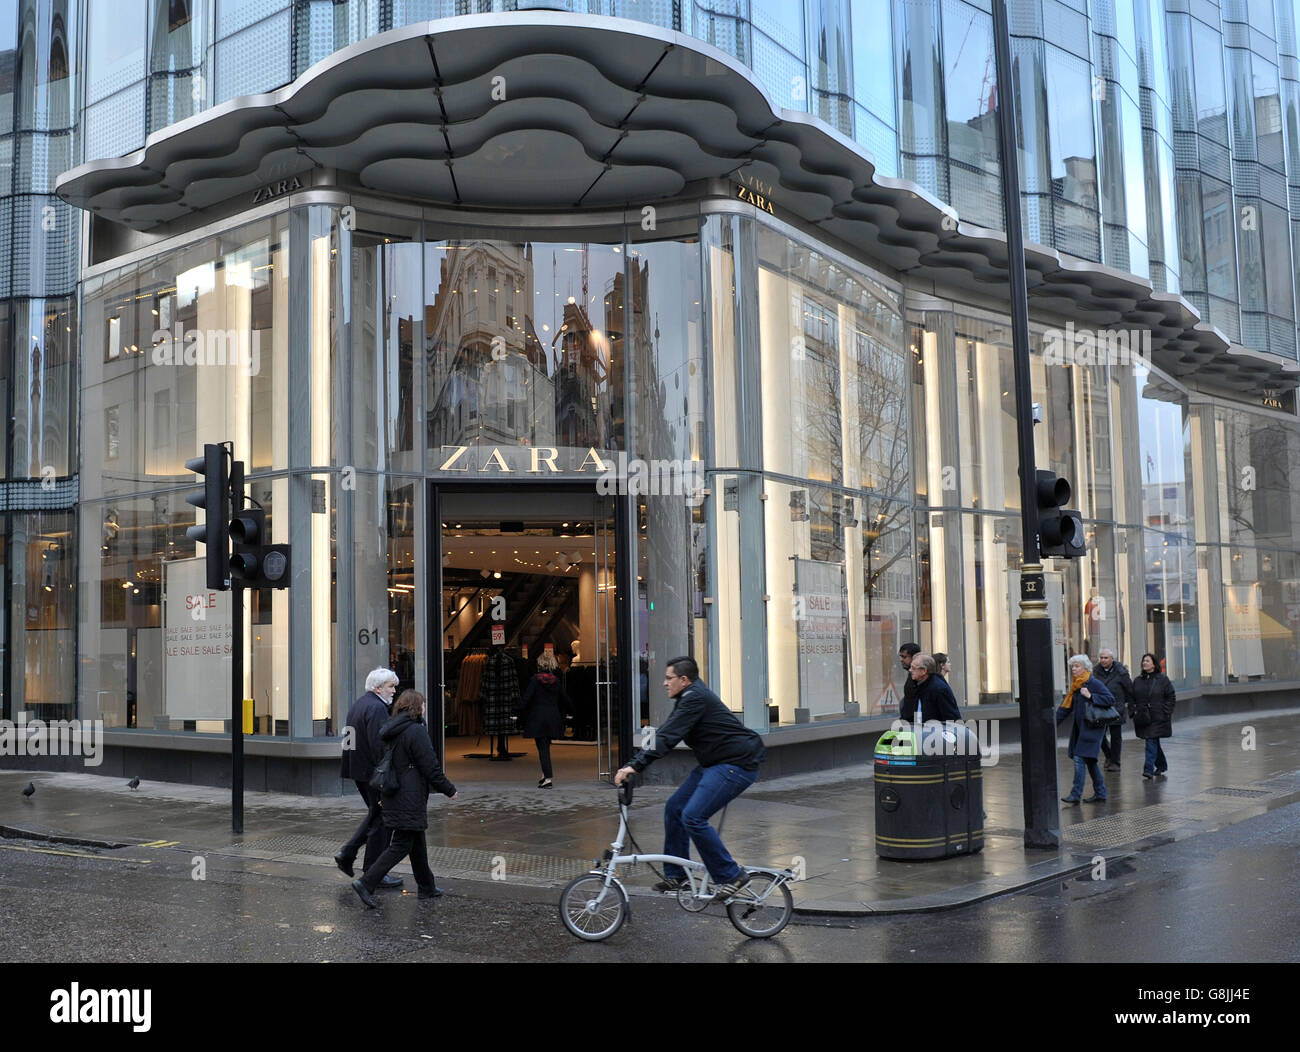 Das Zara-Geschäft in der Oxford Street im Zentrum von London  Stockfotografie - Alamy